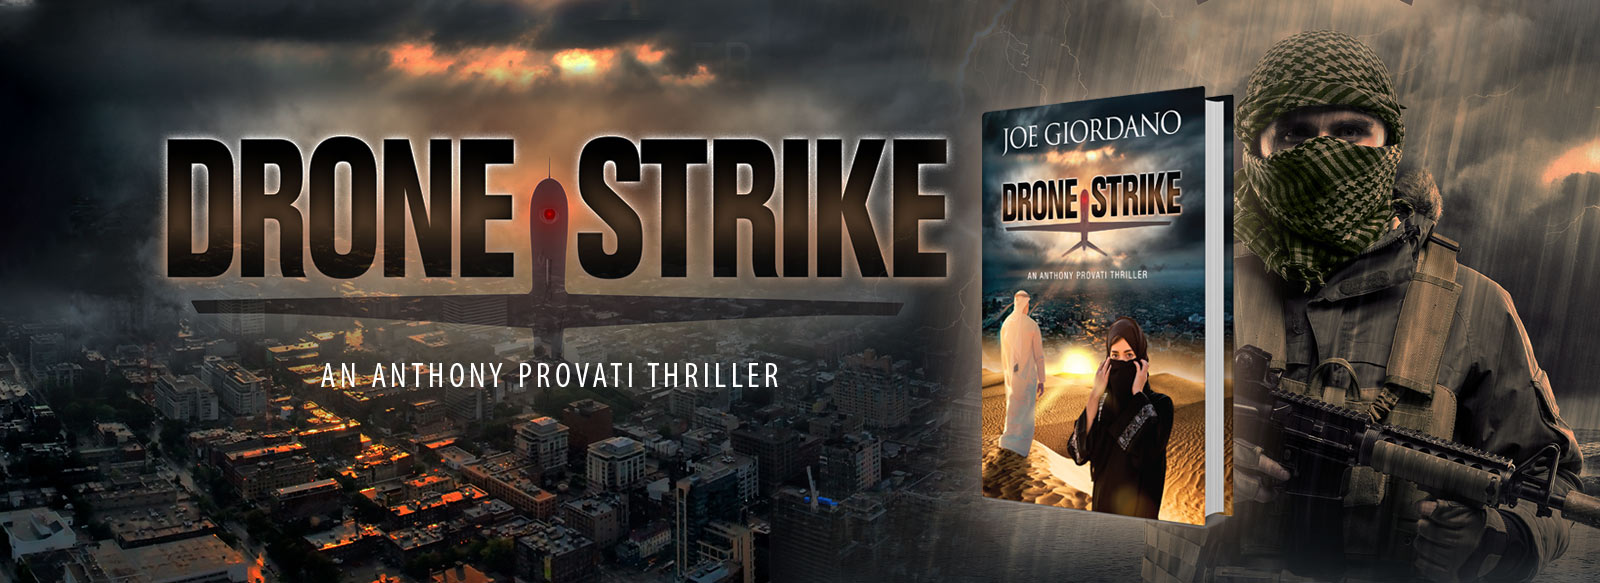 drone strike book by Joe Giordano